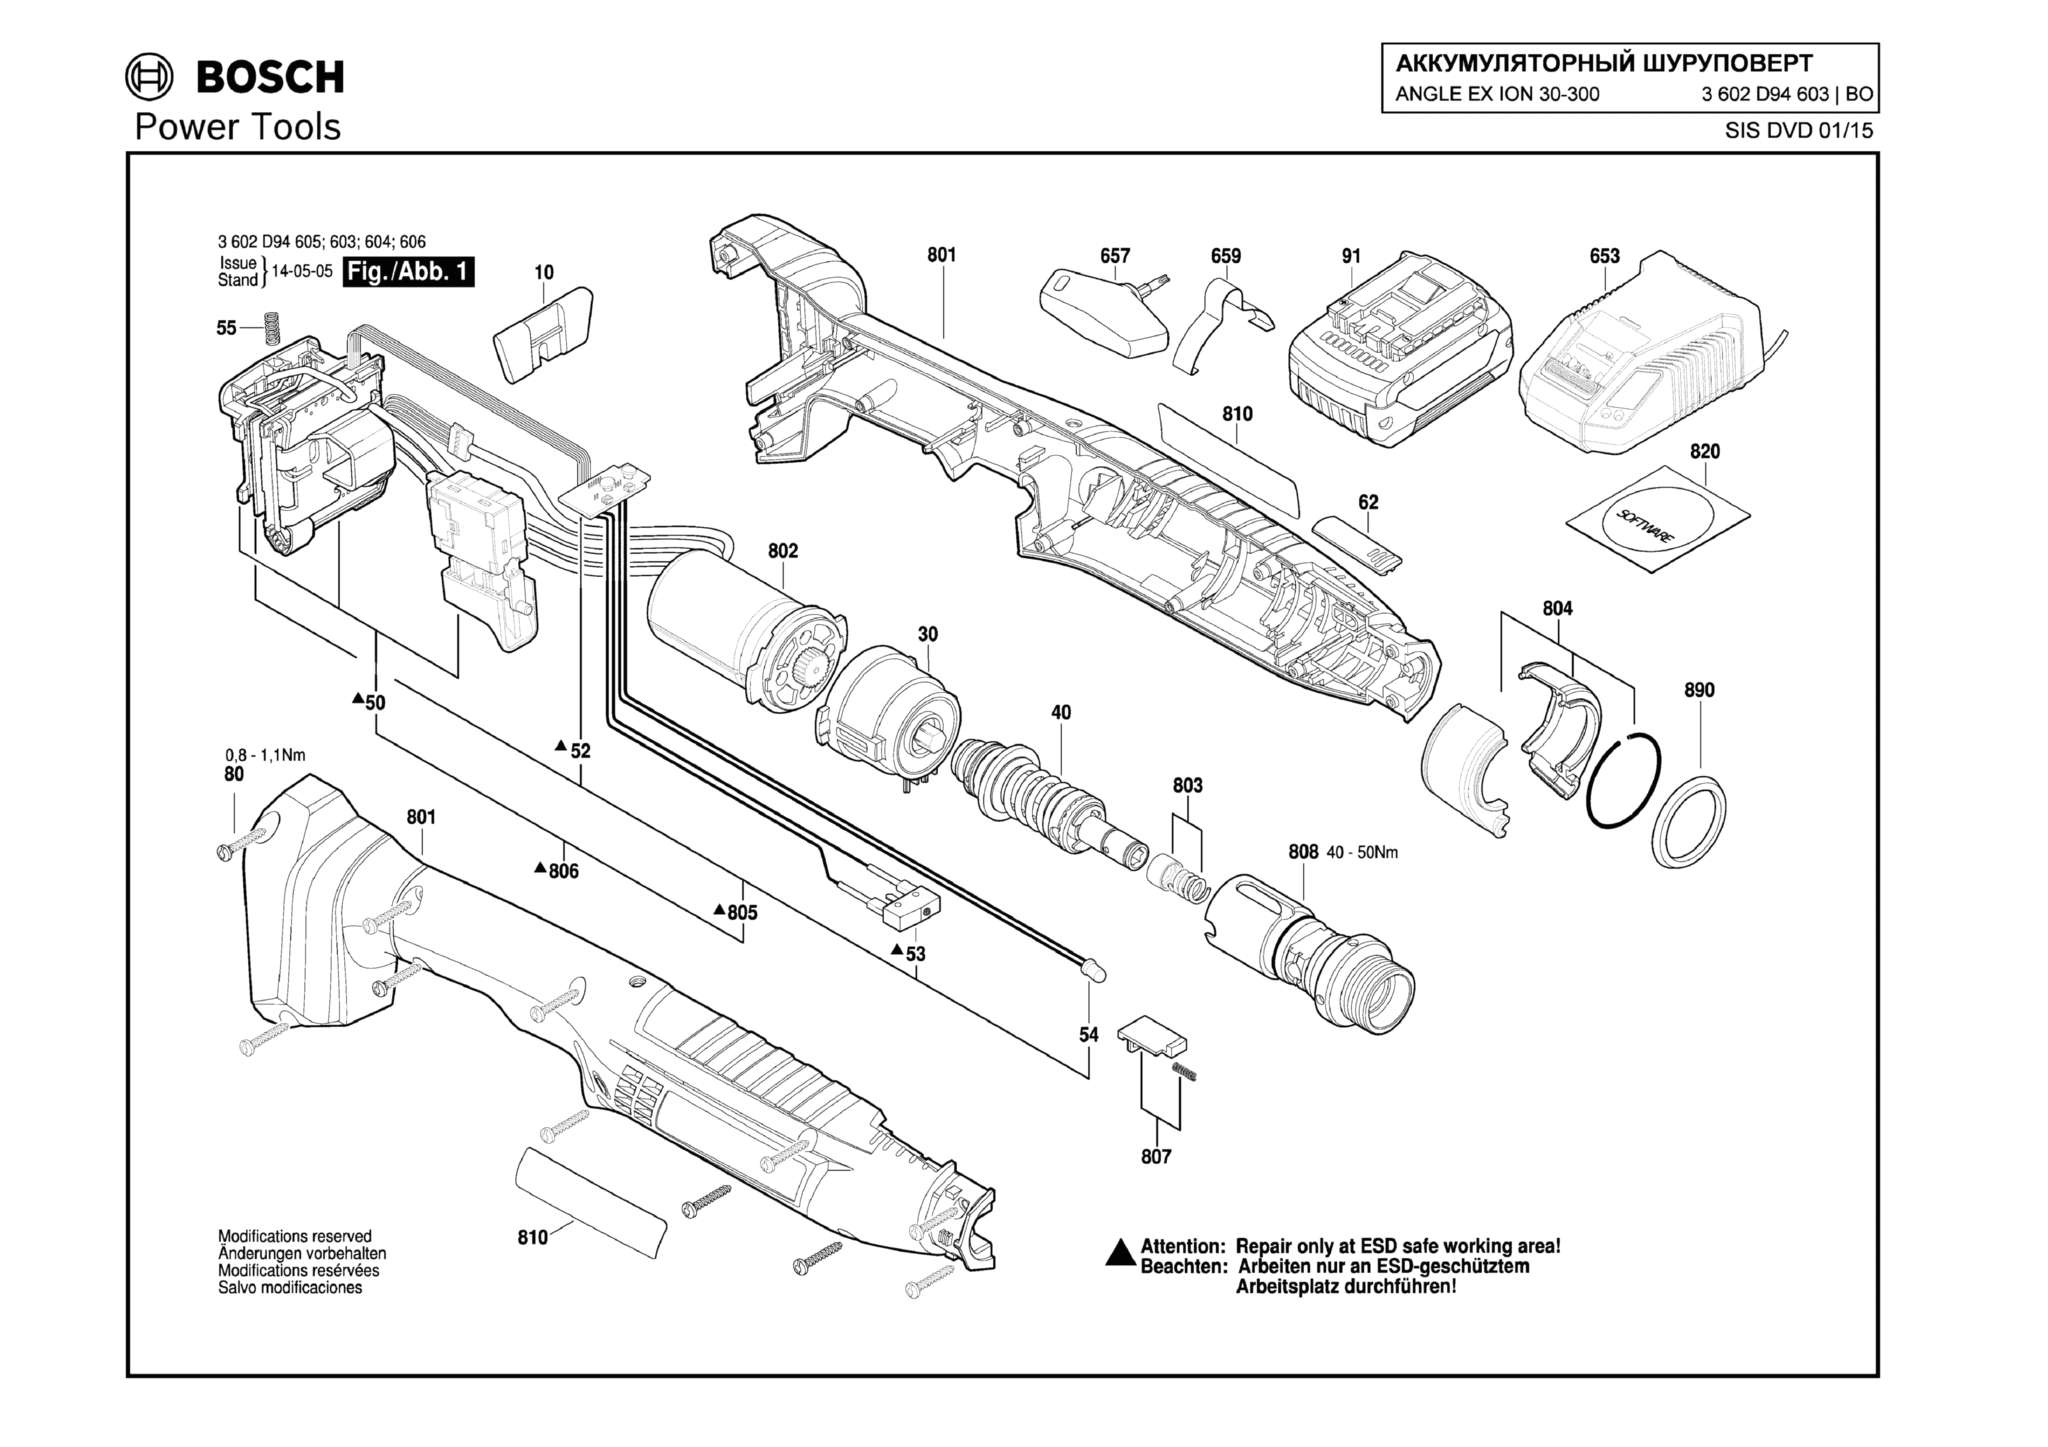 Запчасти, схема и деталировка Bosch ANGLE EX ION 30-300 (ТИП 3602D94603)